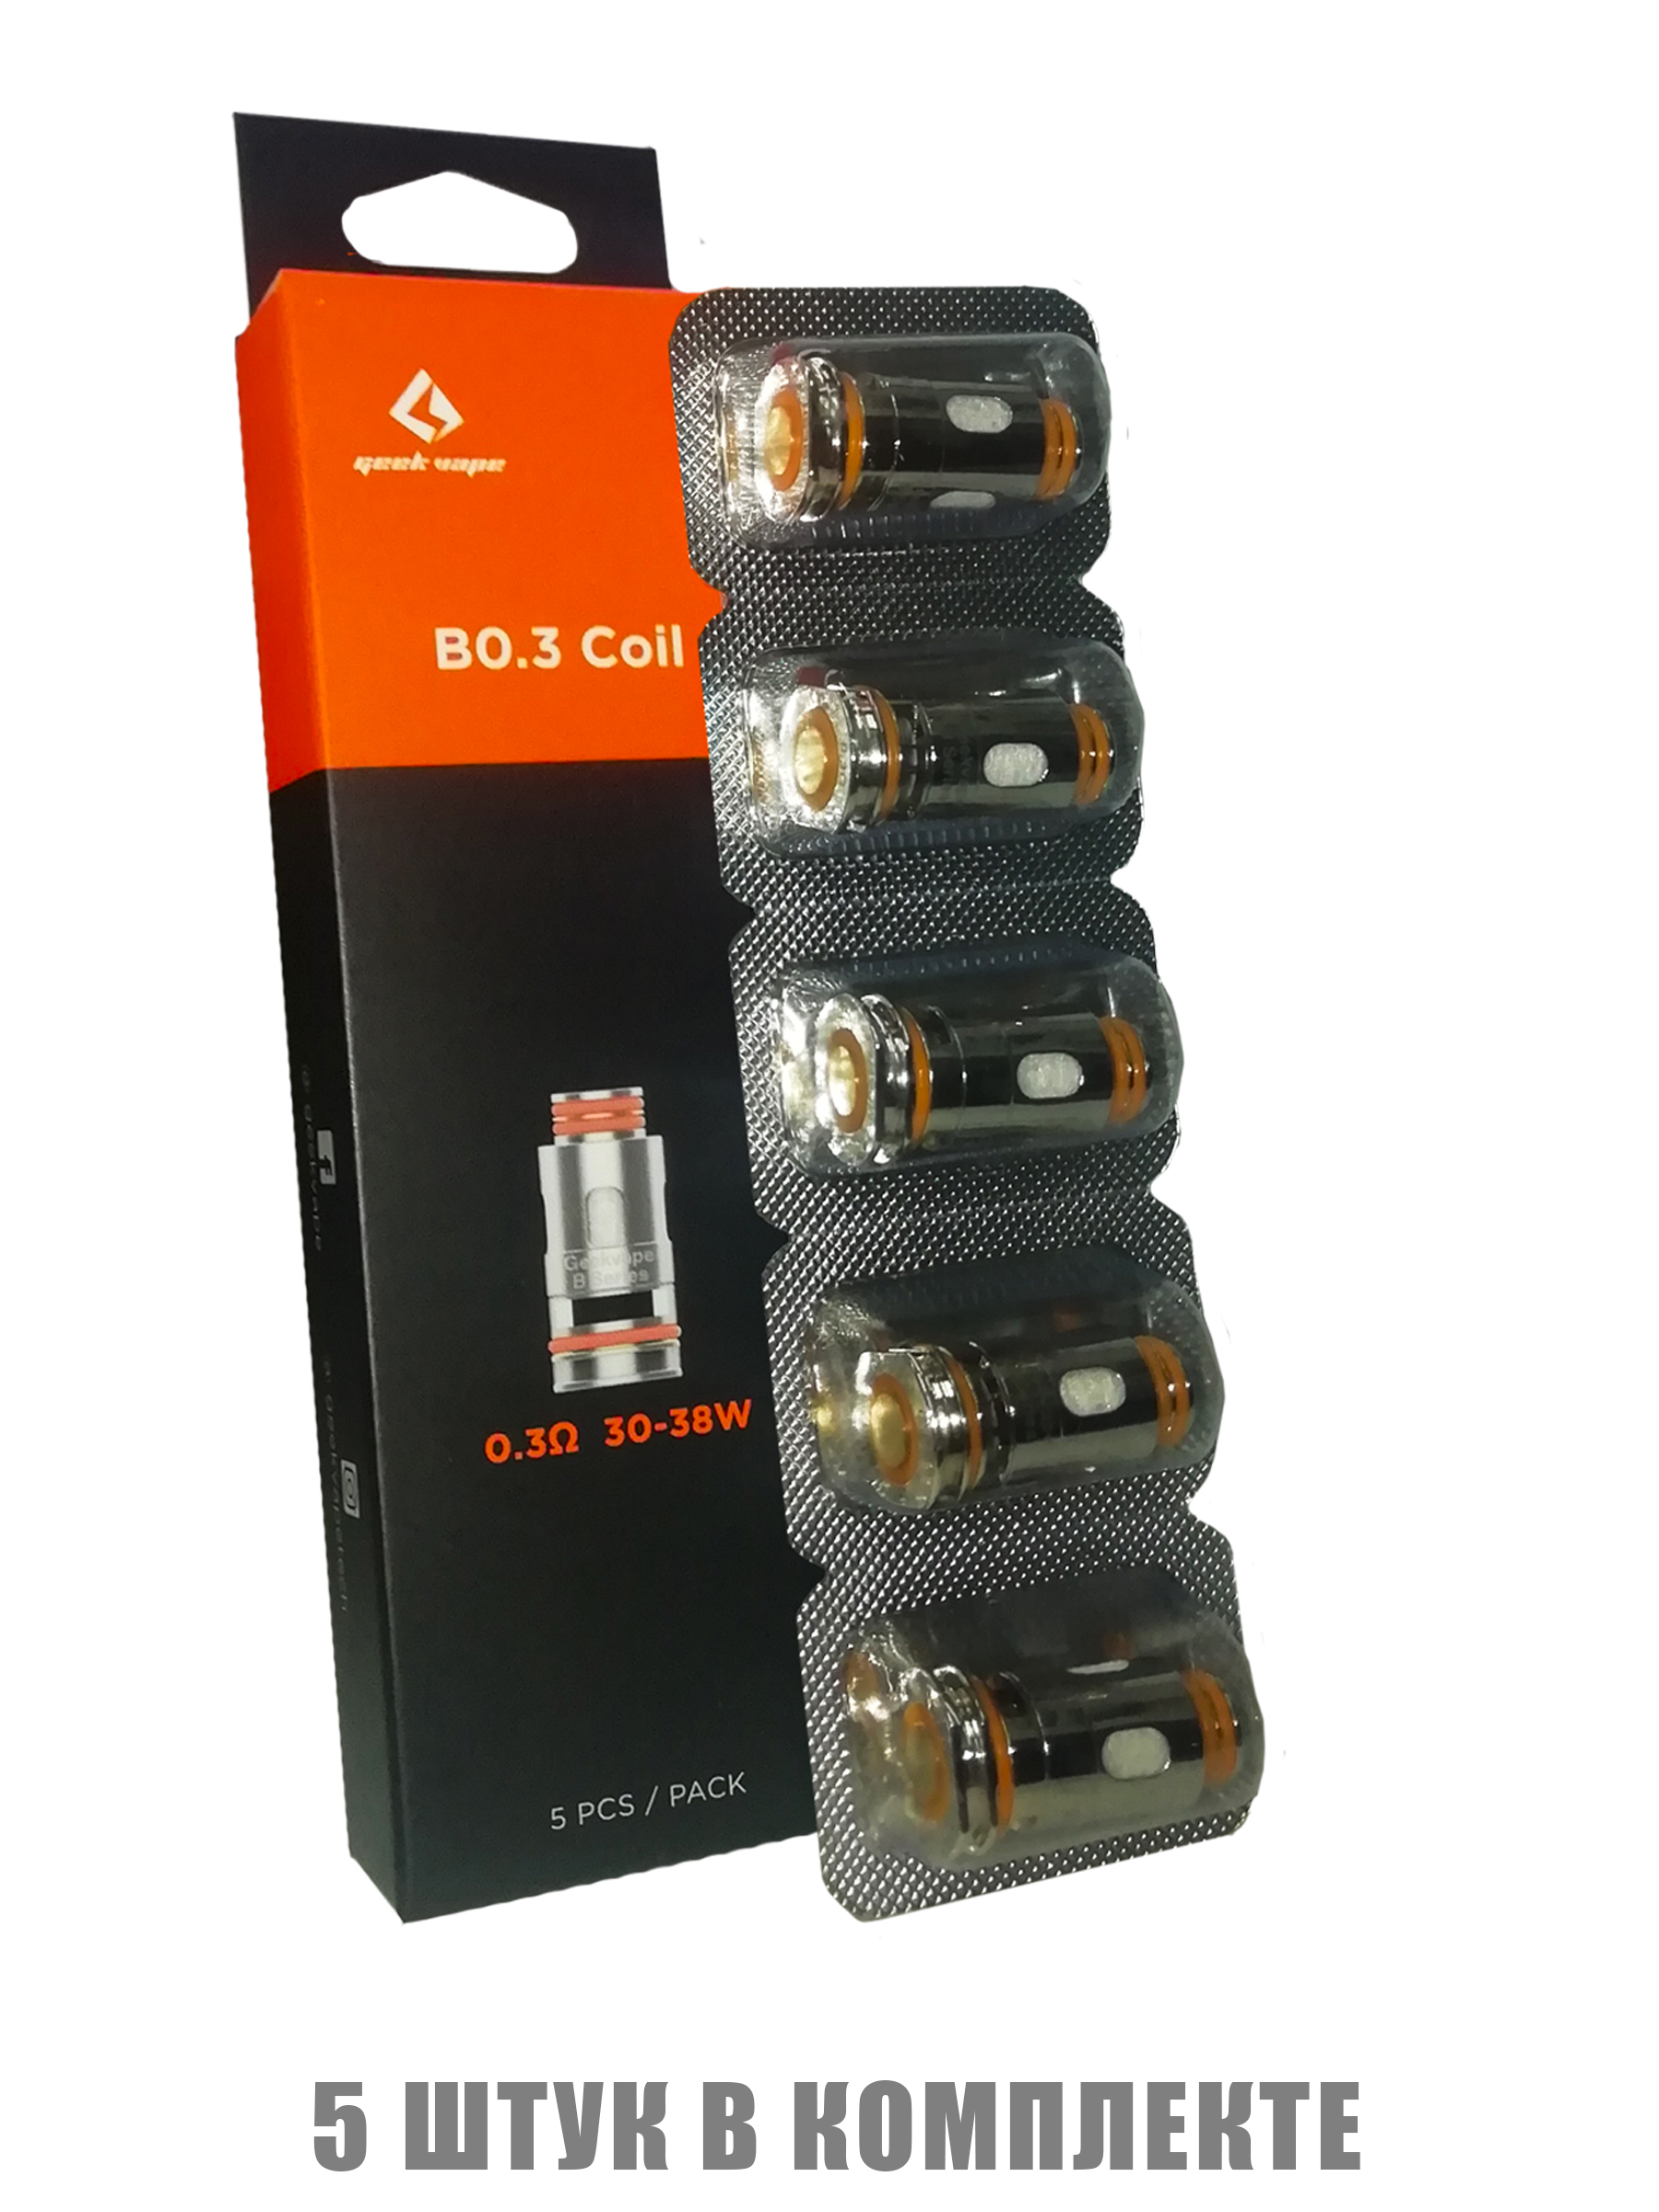 B series coil